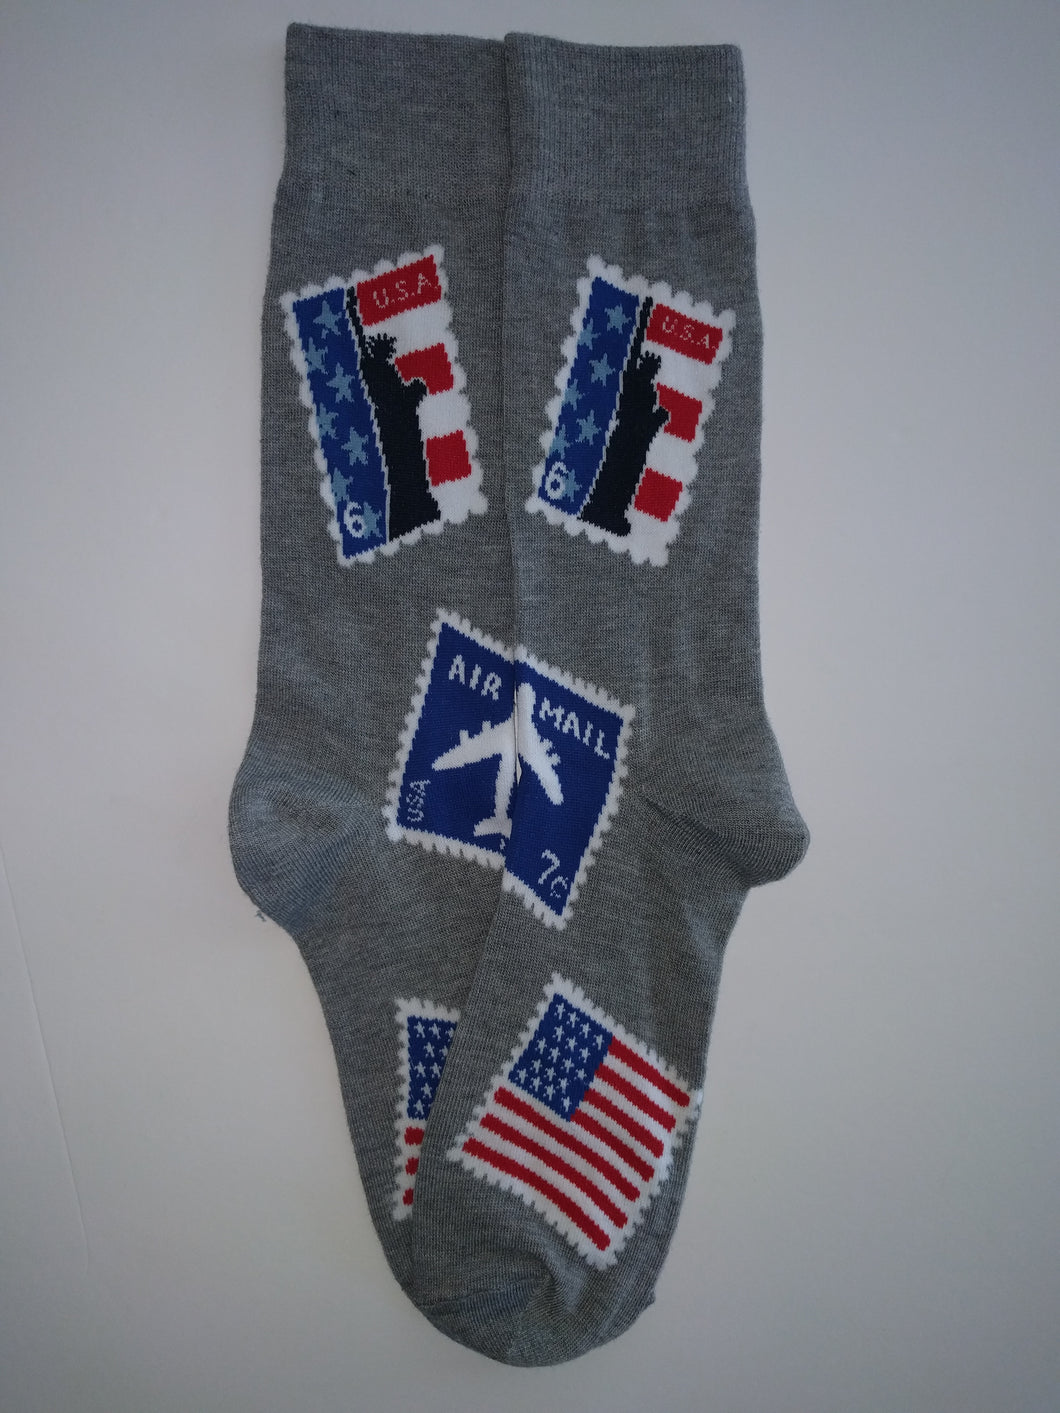 USA Stamp Crew Socks